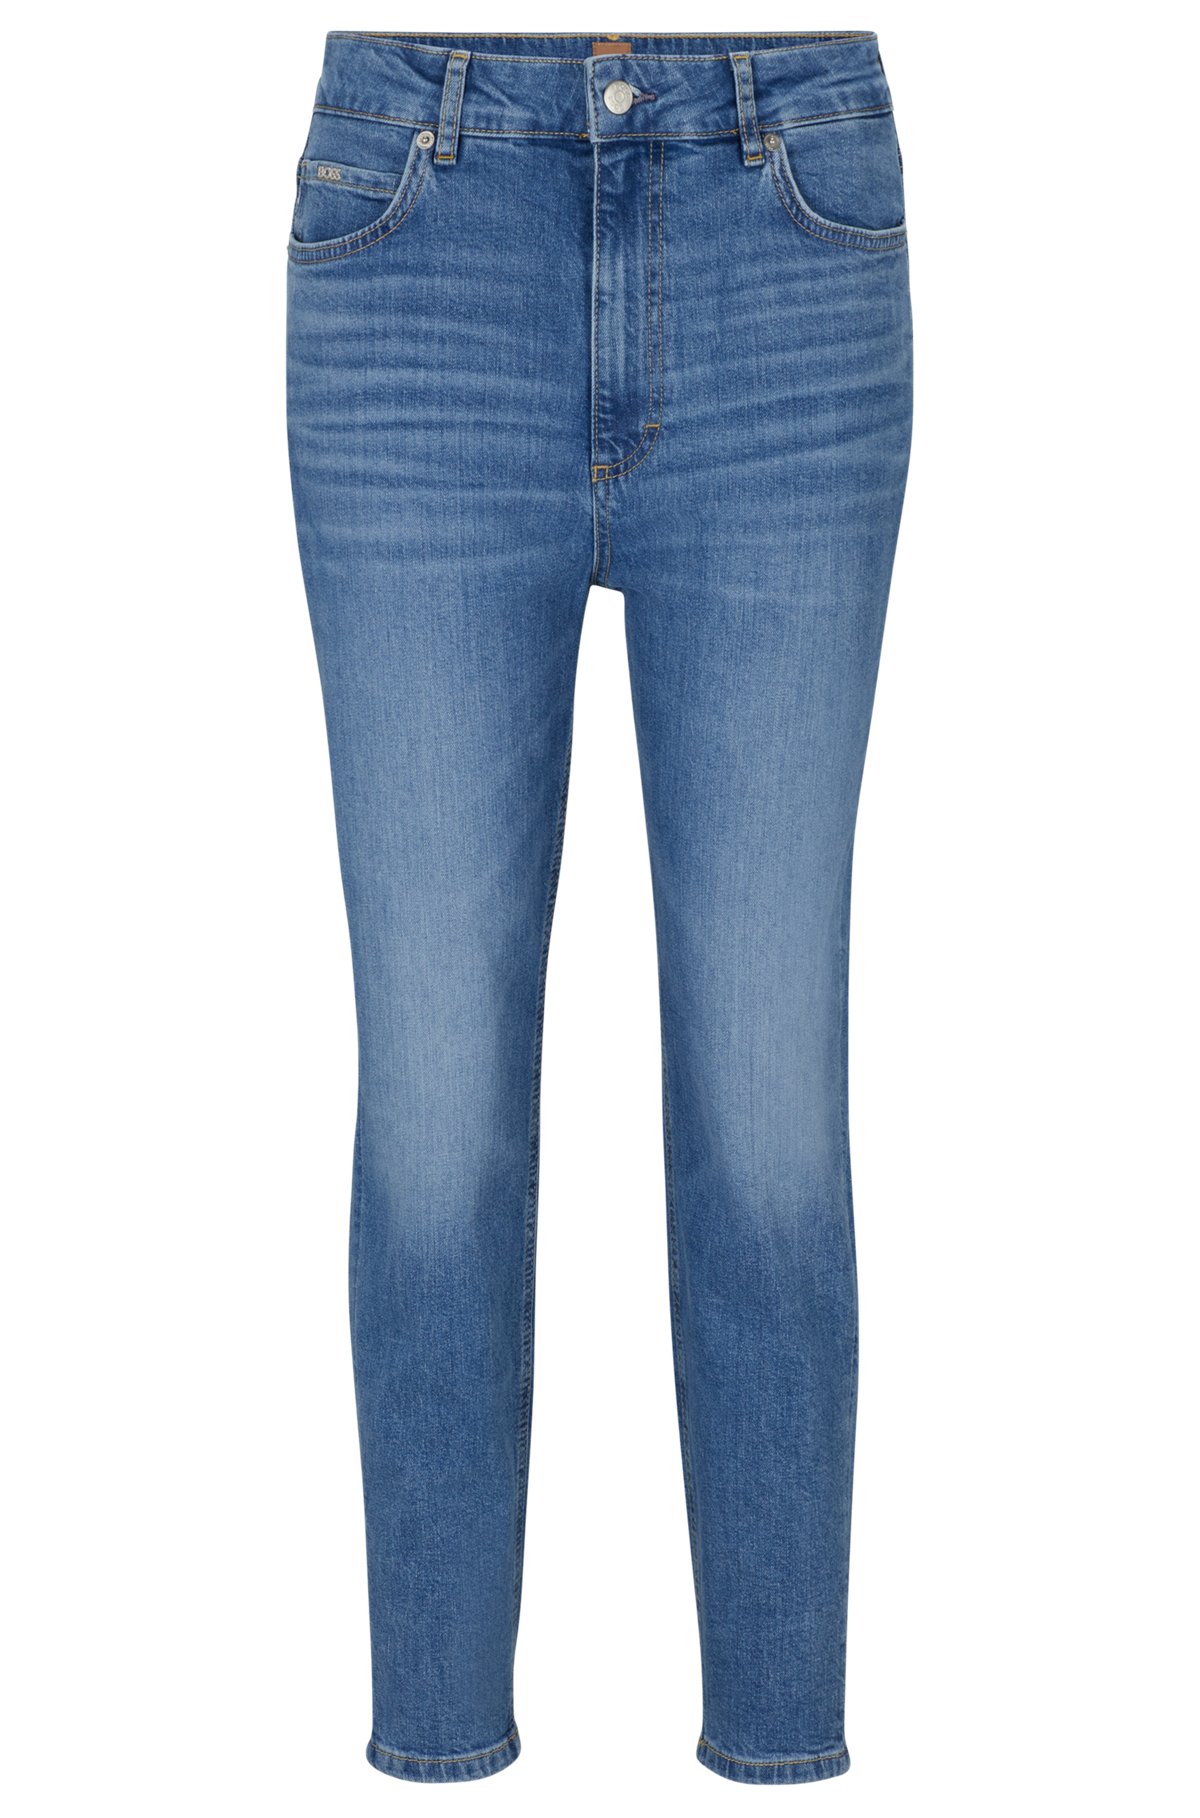 Blaue Cropped-Jeans aus bequemem Stretch-Denim mit hohem Bund, Blau